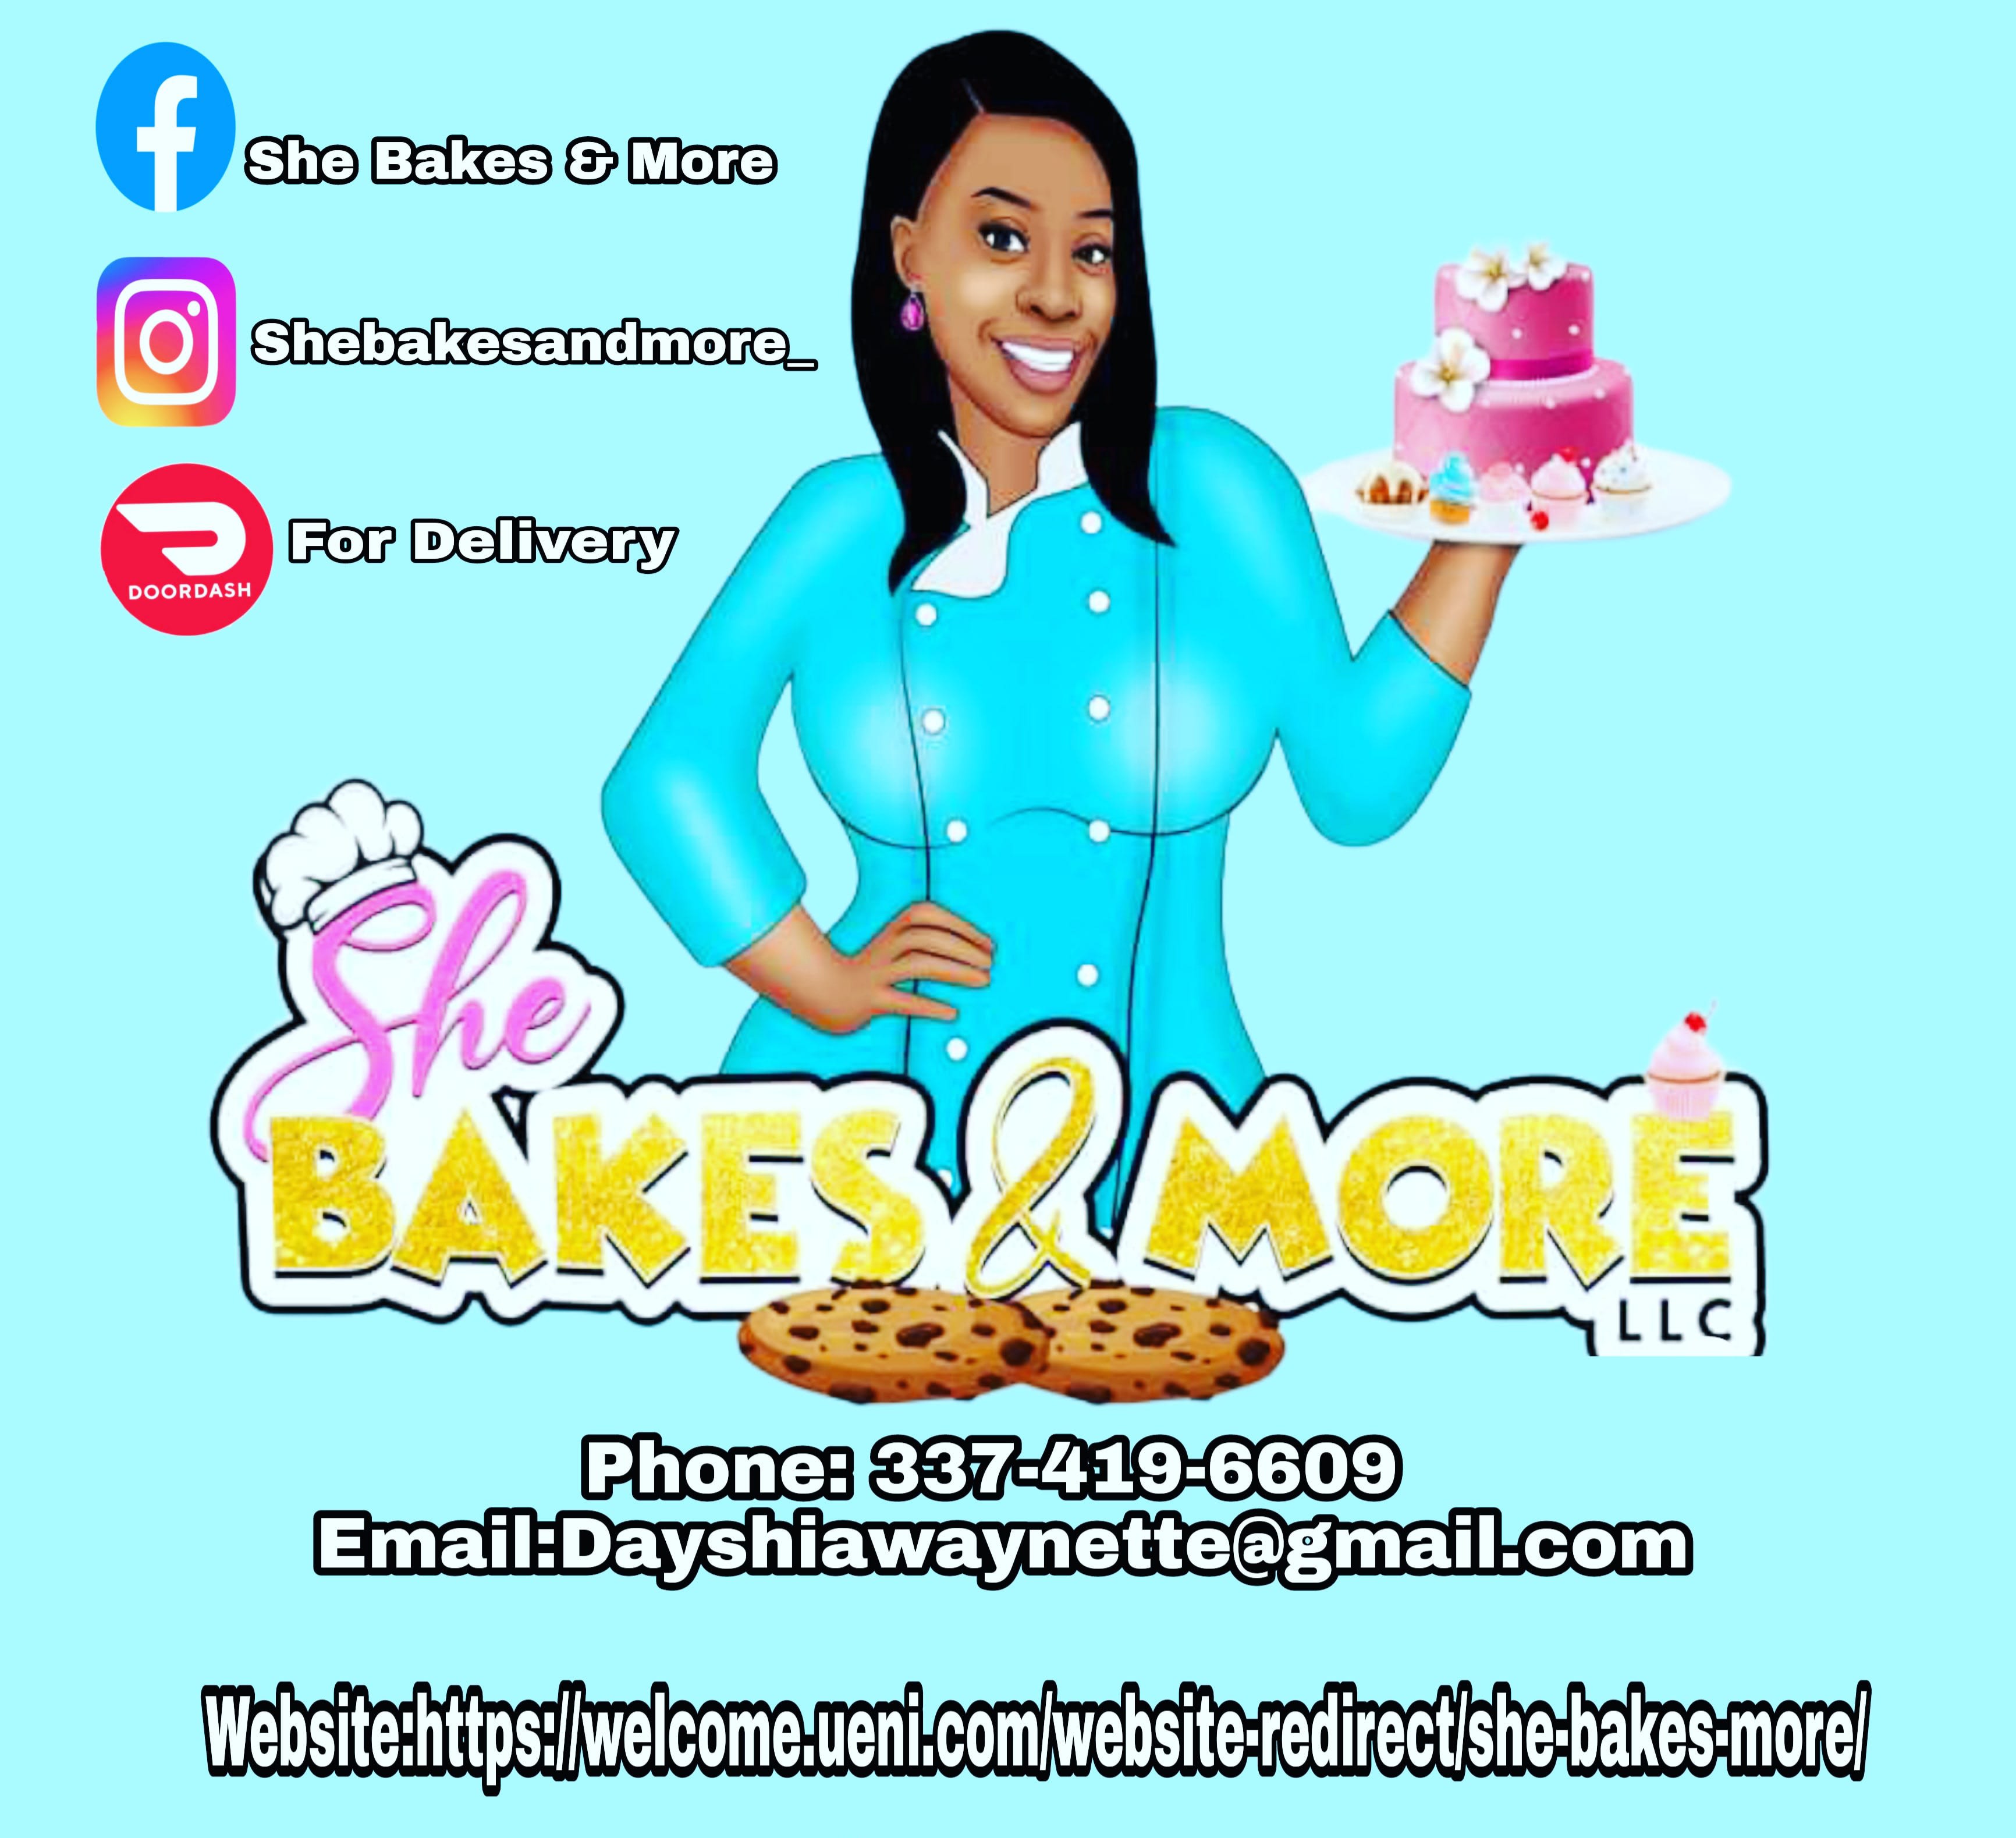 She Bakes & More LLC